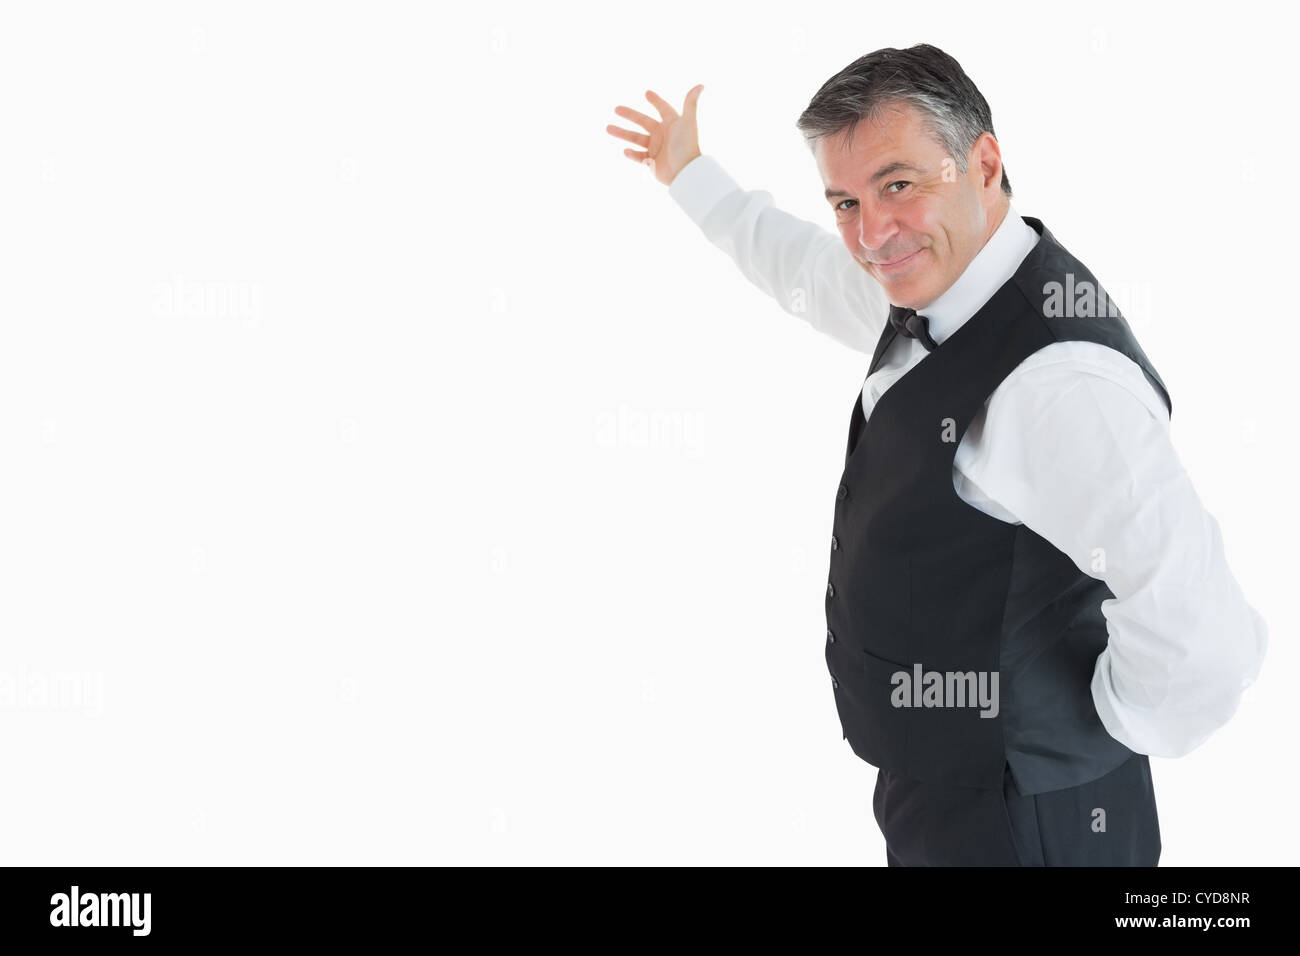 Waiter showing something Stock Photo